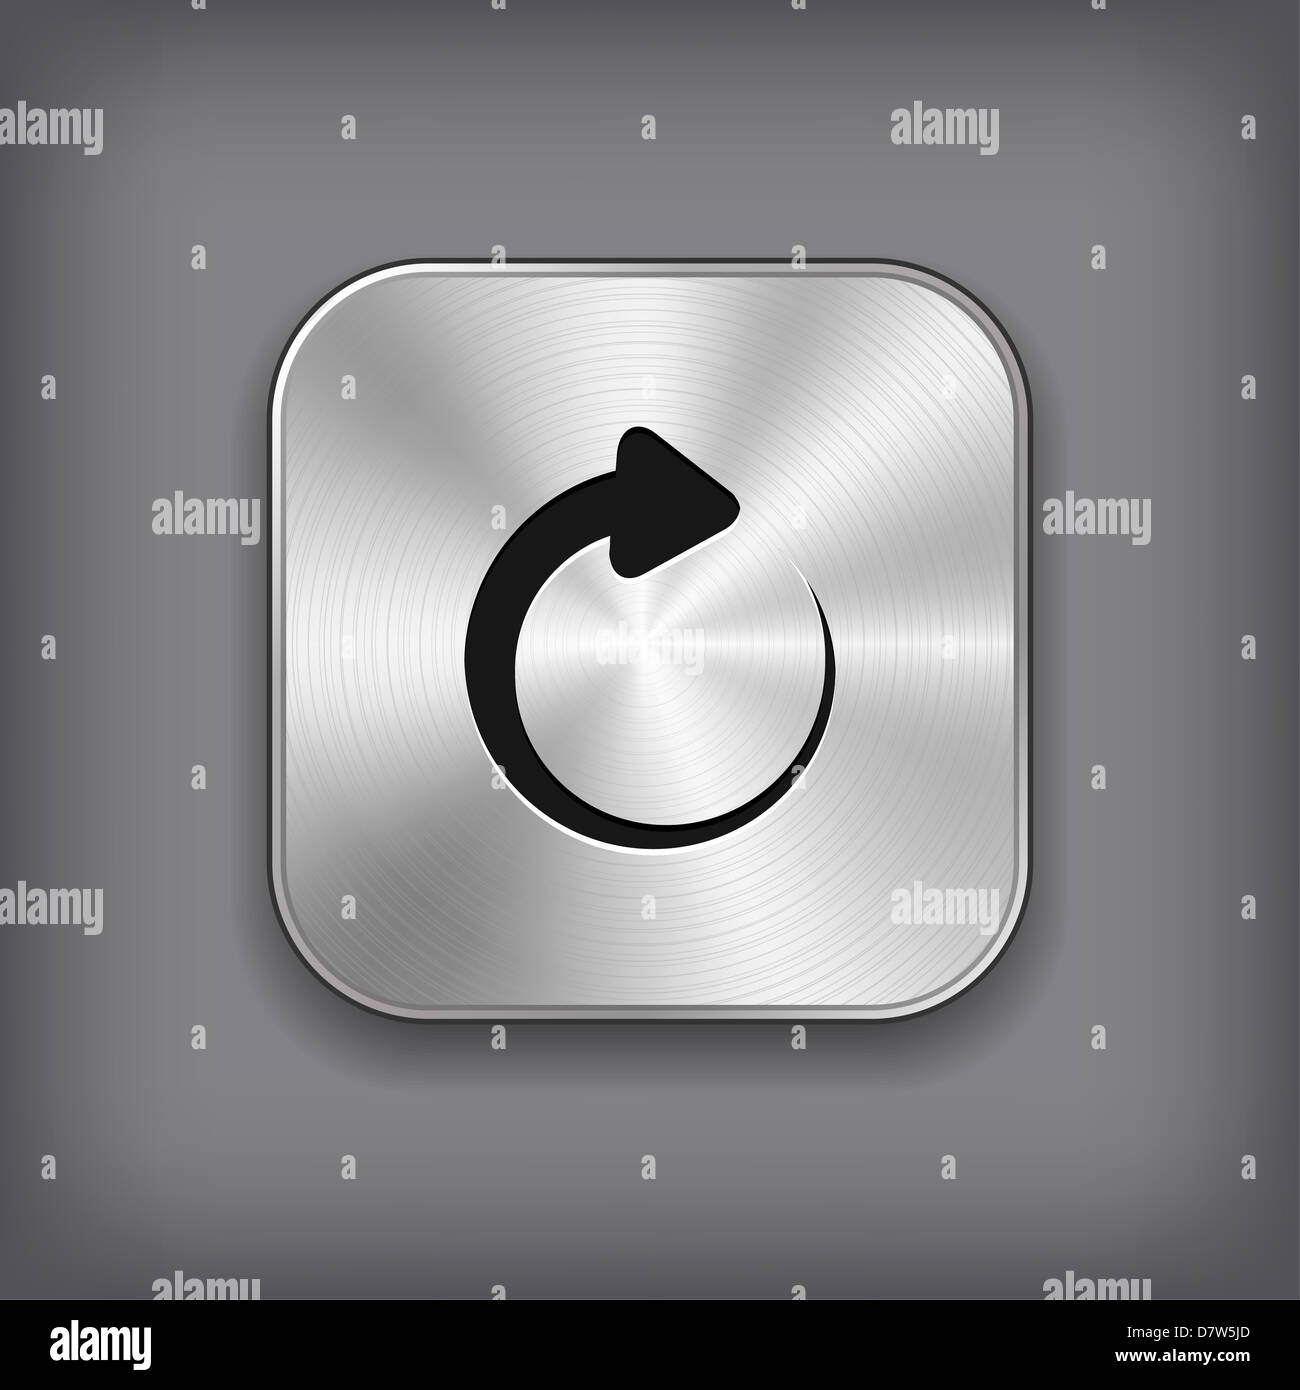 Media player icon - metal app button Stock Photo